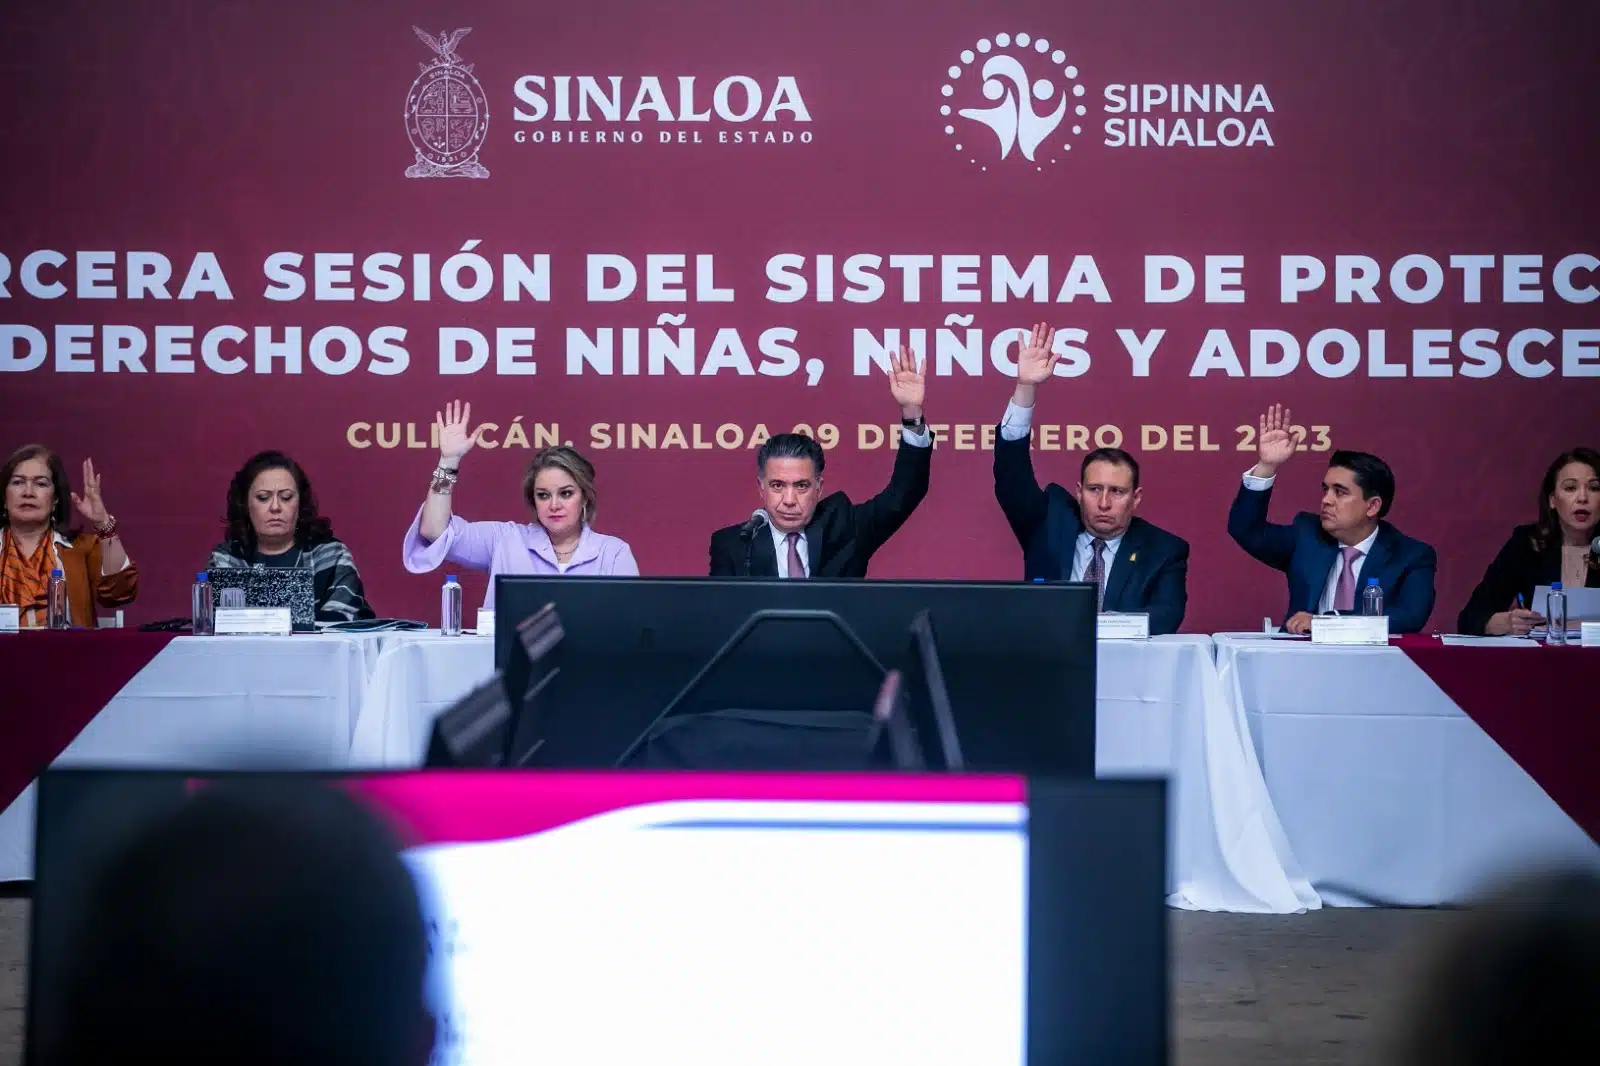 Tercera Sesión Sipinna Sinaloa